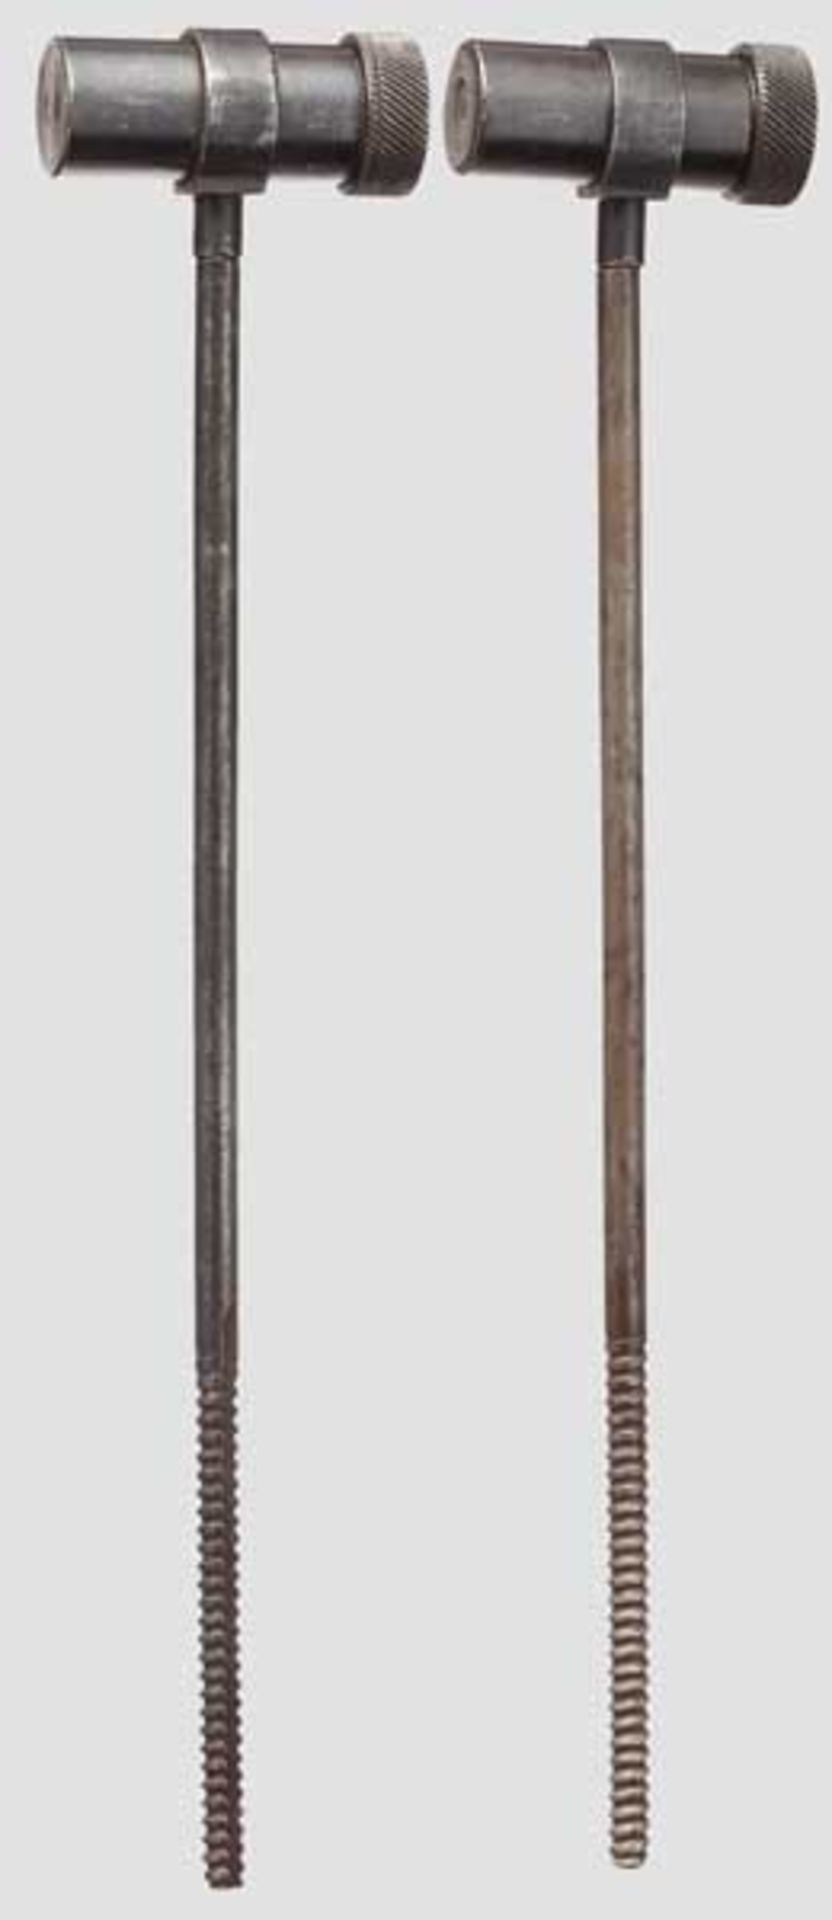 Zwei Wischstöcke zur Parabellum Commercial Jeweils aus 5,5 mm starkem Stahldraht, Länge 185 mm,